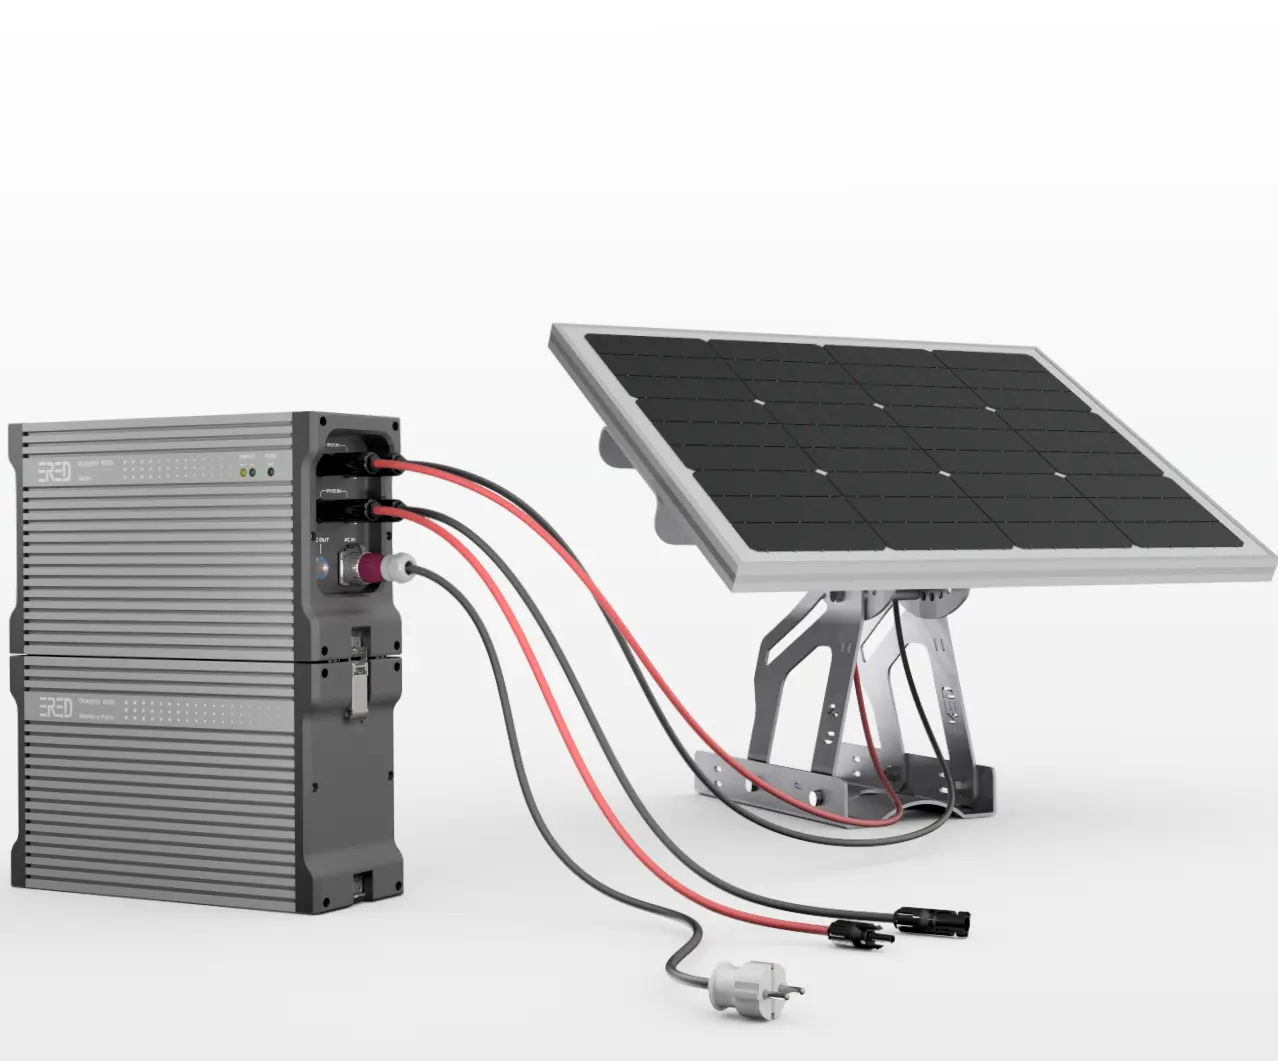 نظام إمداد الطاقة متعدد الأغراض من نوع Dotgrid600 يتم تشغيله بالطاقة الشمسية صنع في كوريا بعلامة خاصة عالية الجودة بأفضل جودة من كوريا الجنوبية